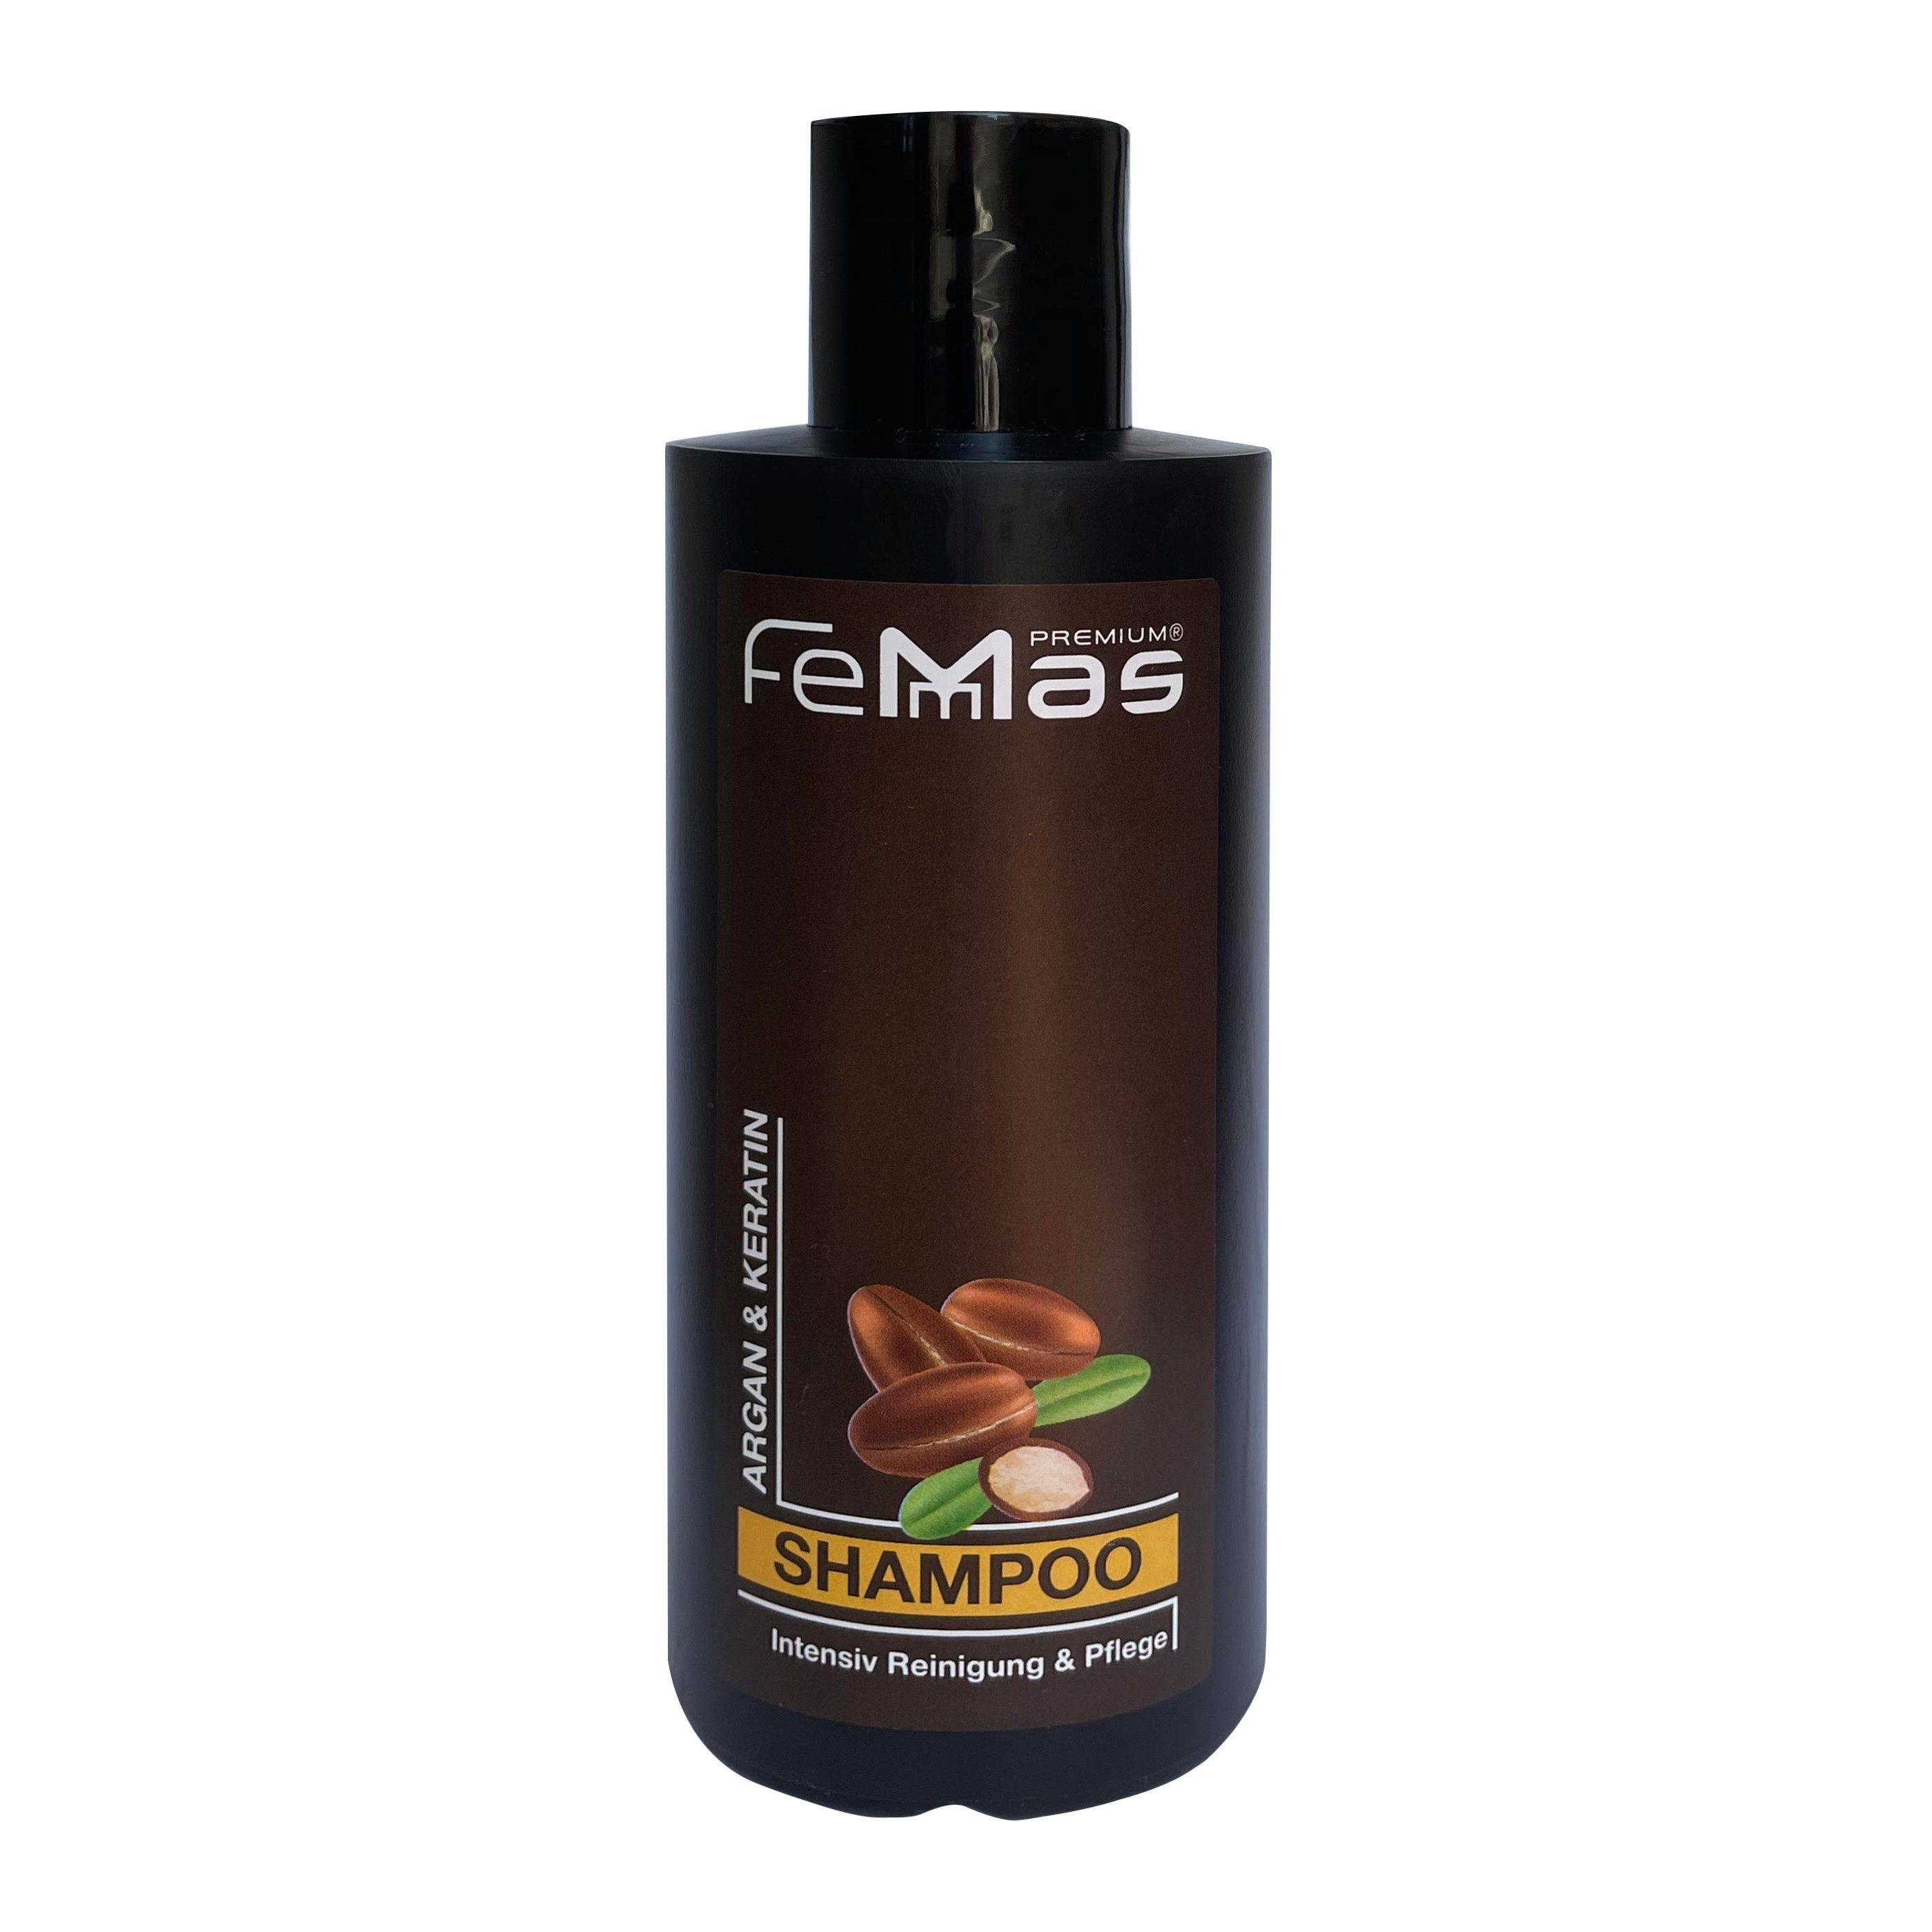 300ml Shampoo Keratin Haarshampoo Femmas FemMas & Argan Premium